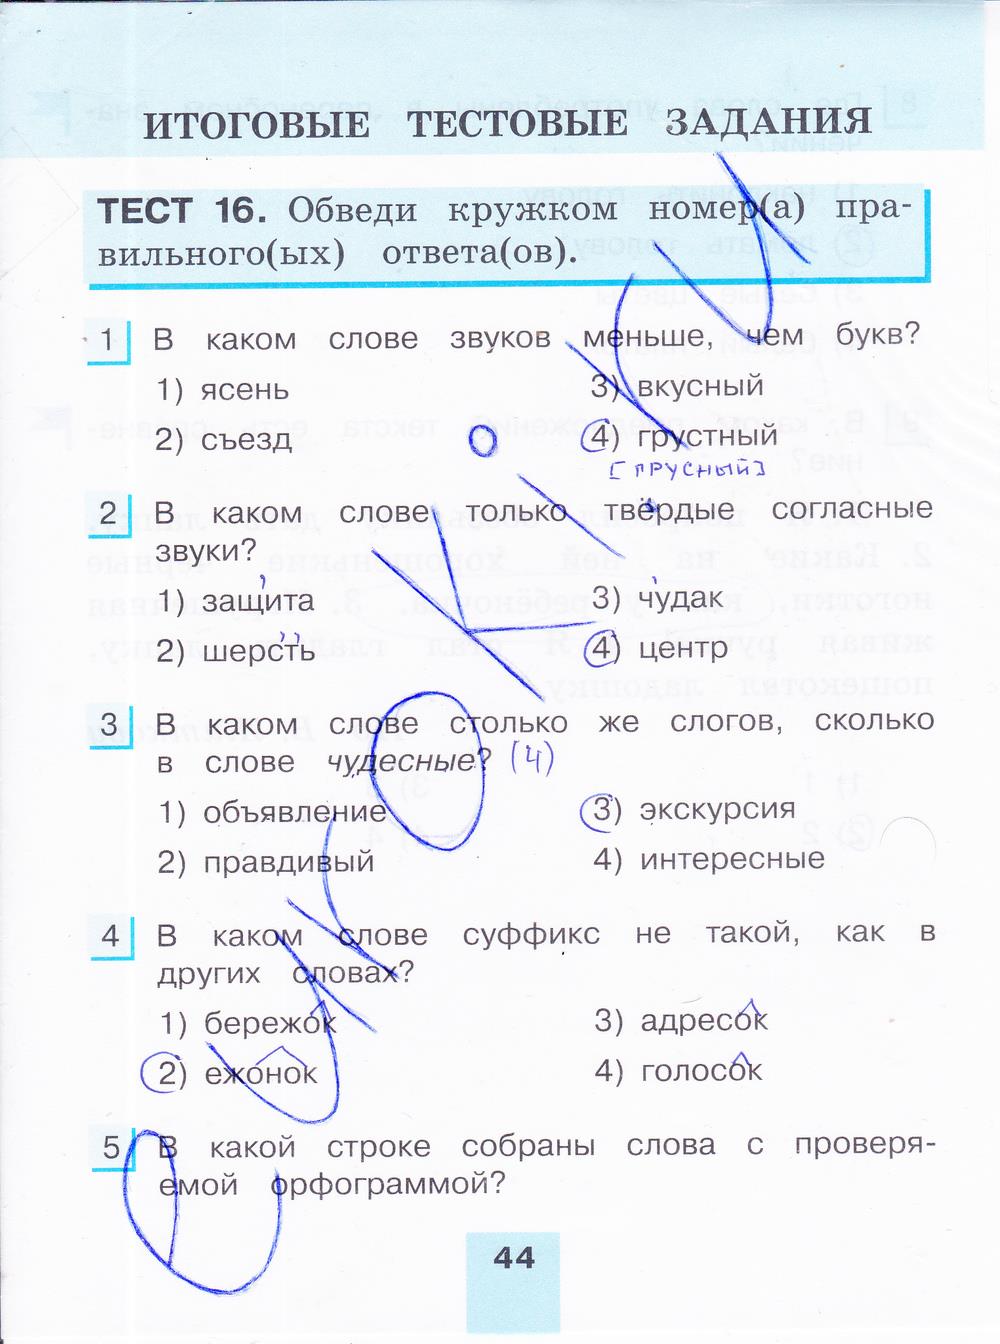 гдз 4 класс тестовые задания часть 2 страница 44 русский язык Корешкова